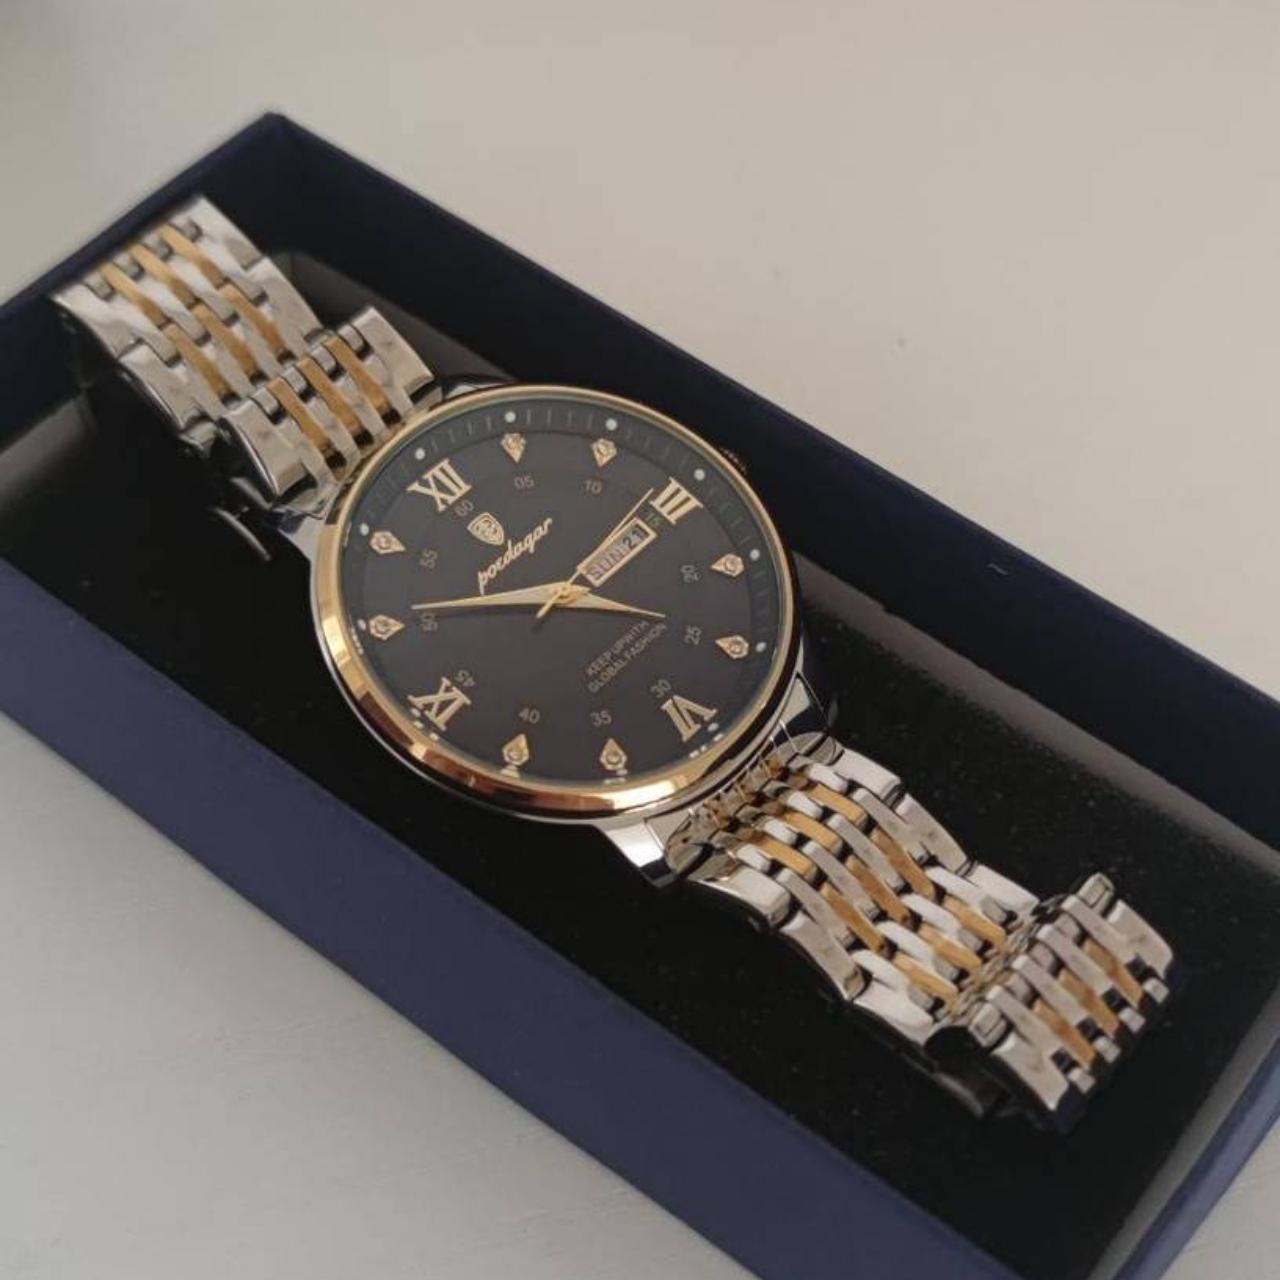 luxury regency business gold black watch Brand new... - Depop